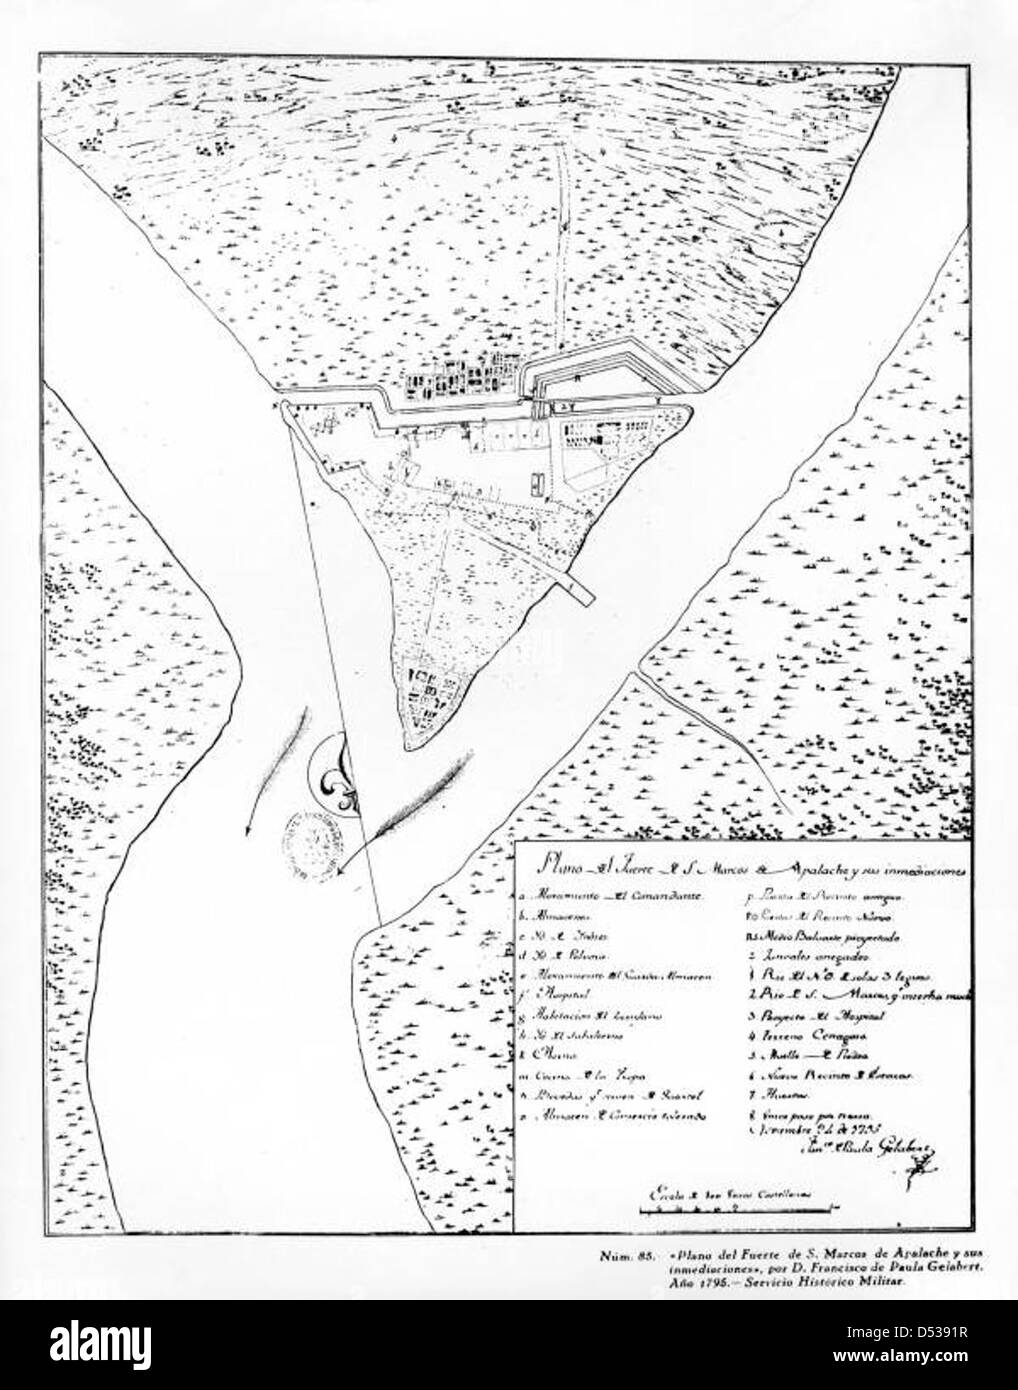 Plan de Fuerte San Marcos de Apalache: San Marcos, Florida Foto de stock